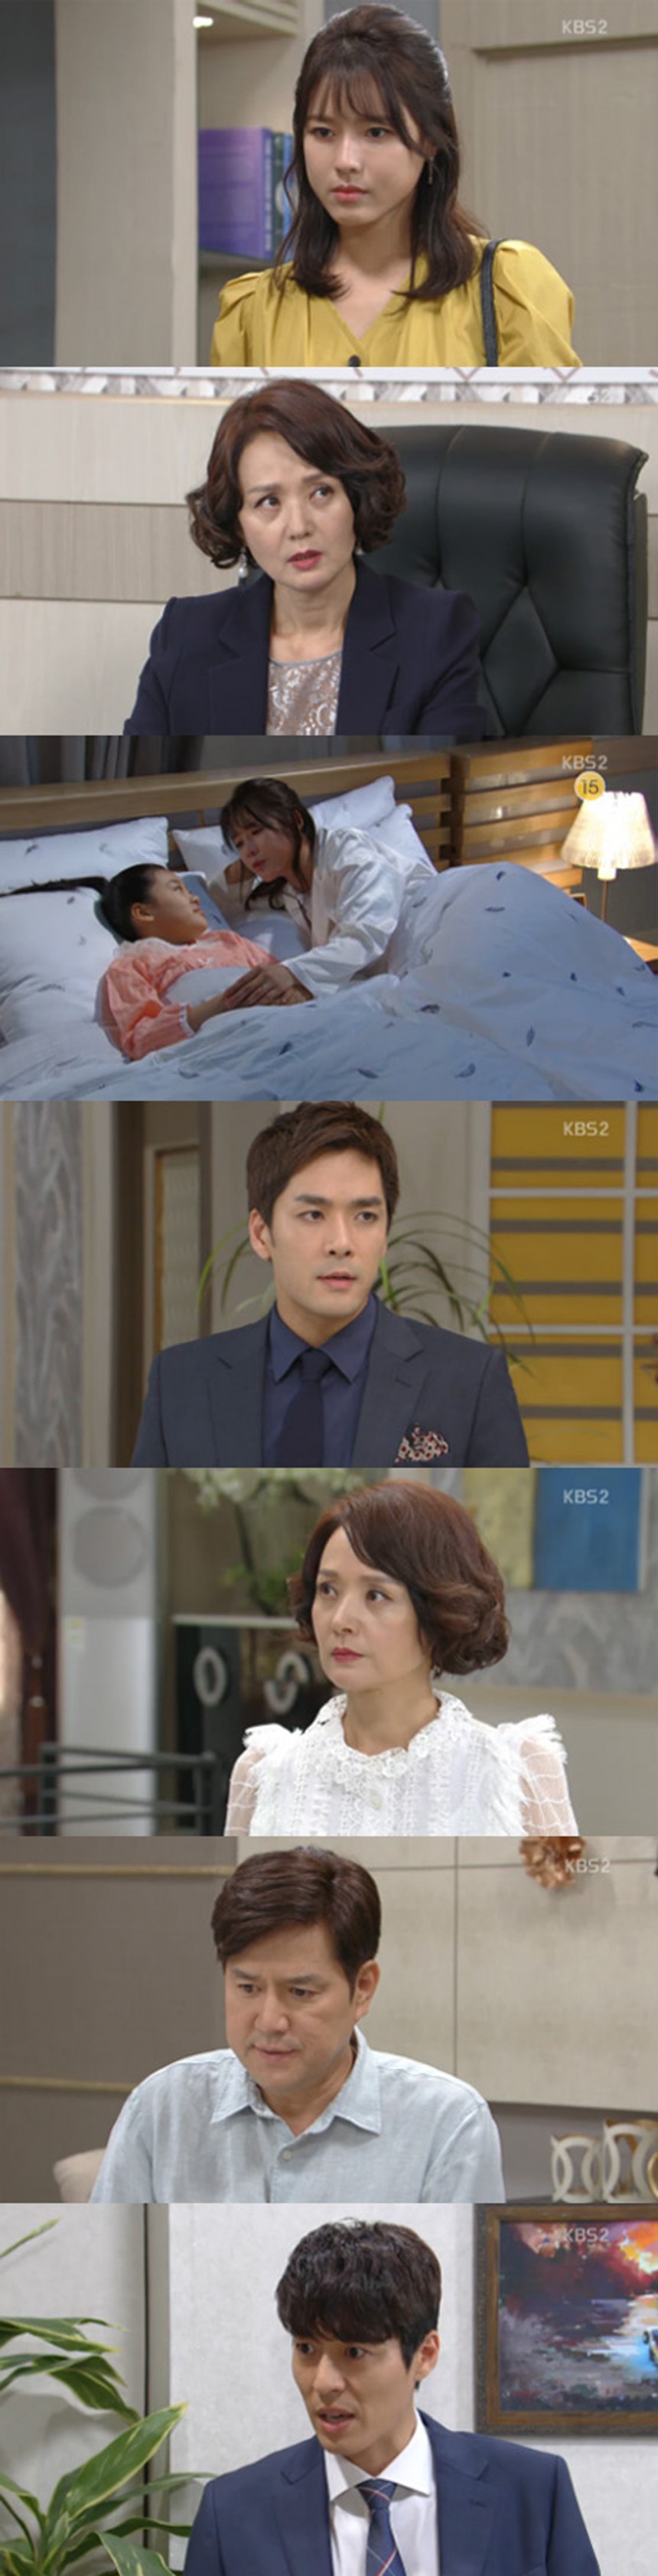 ‘이름 없는 여자’ 시청률 / KBS